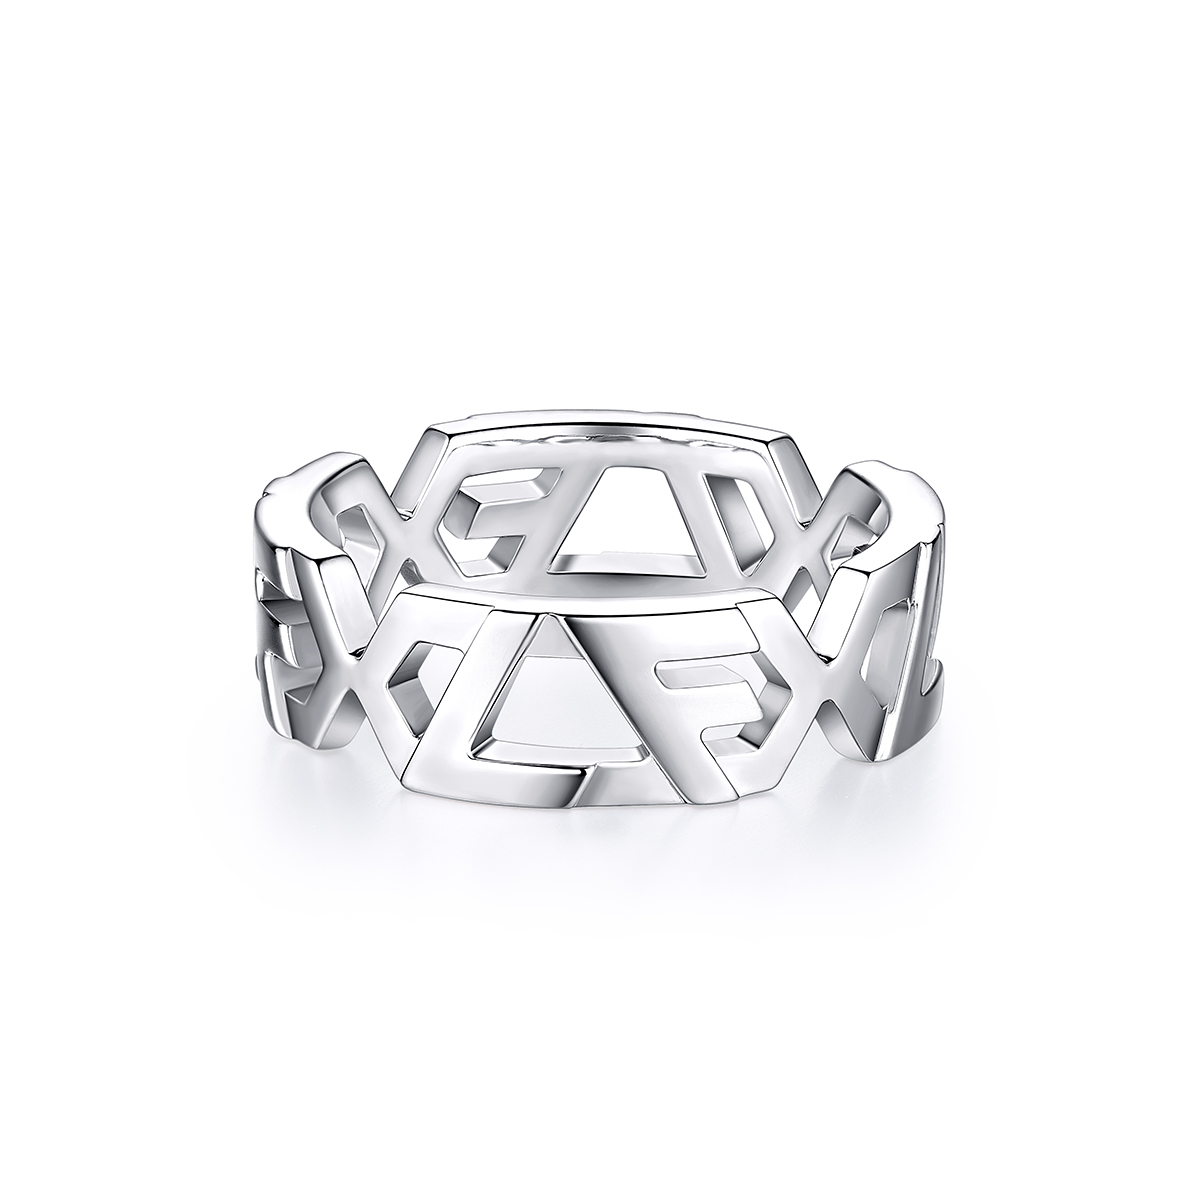 六福珠宝LF银饰间系列925银六边形戒指女款定价001207RA